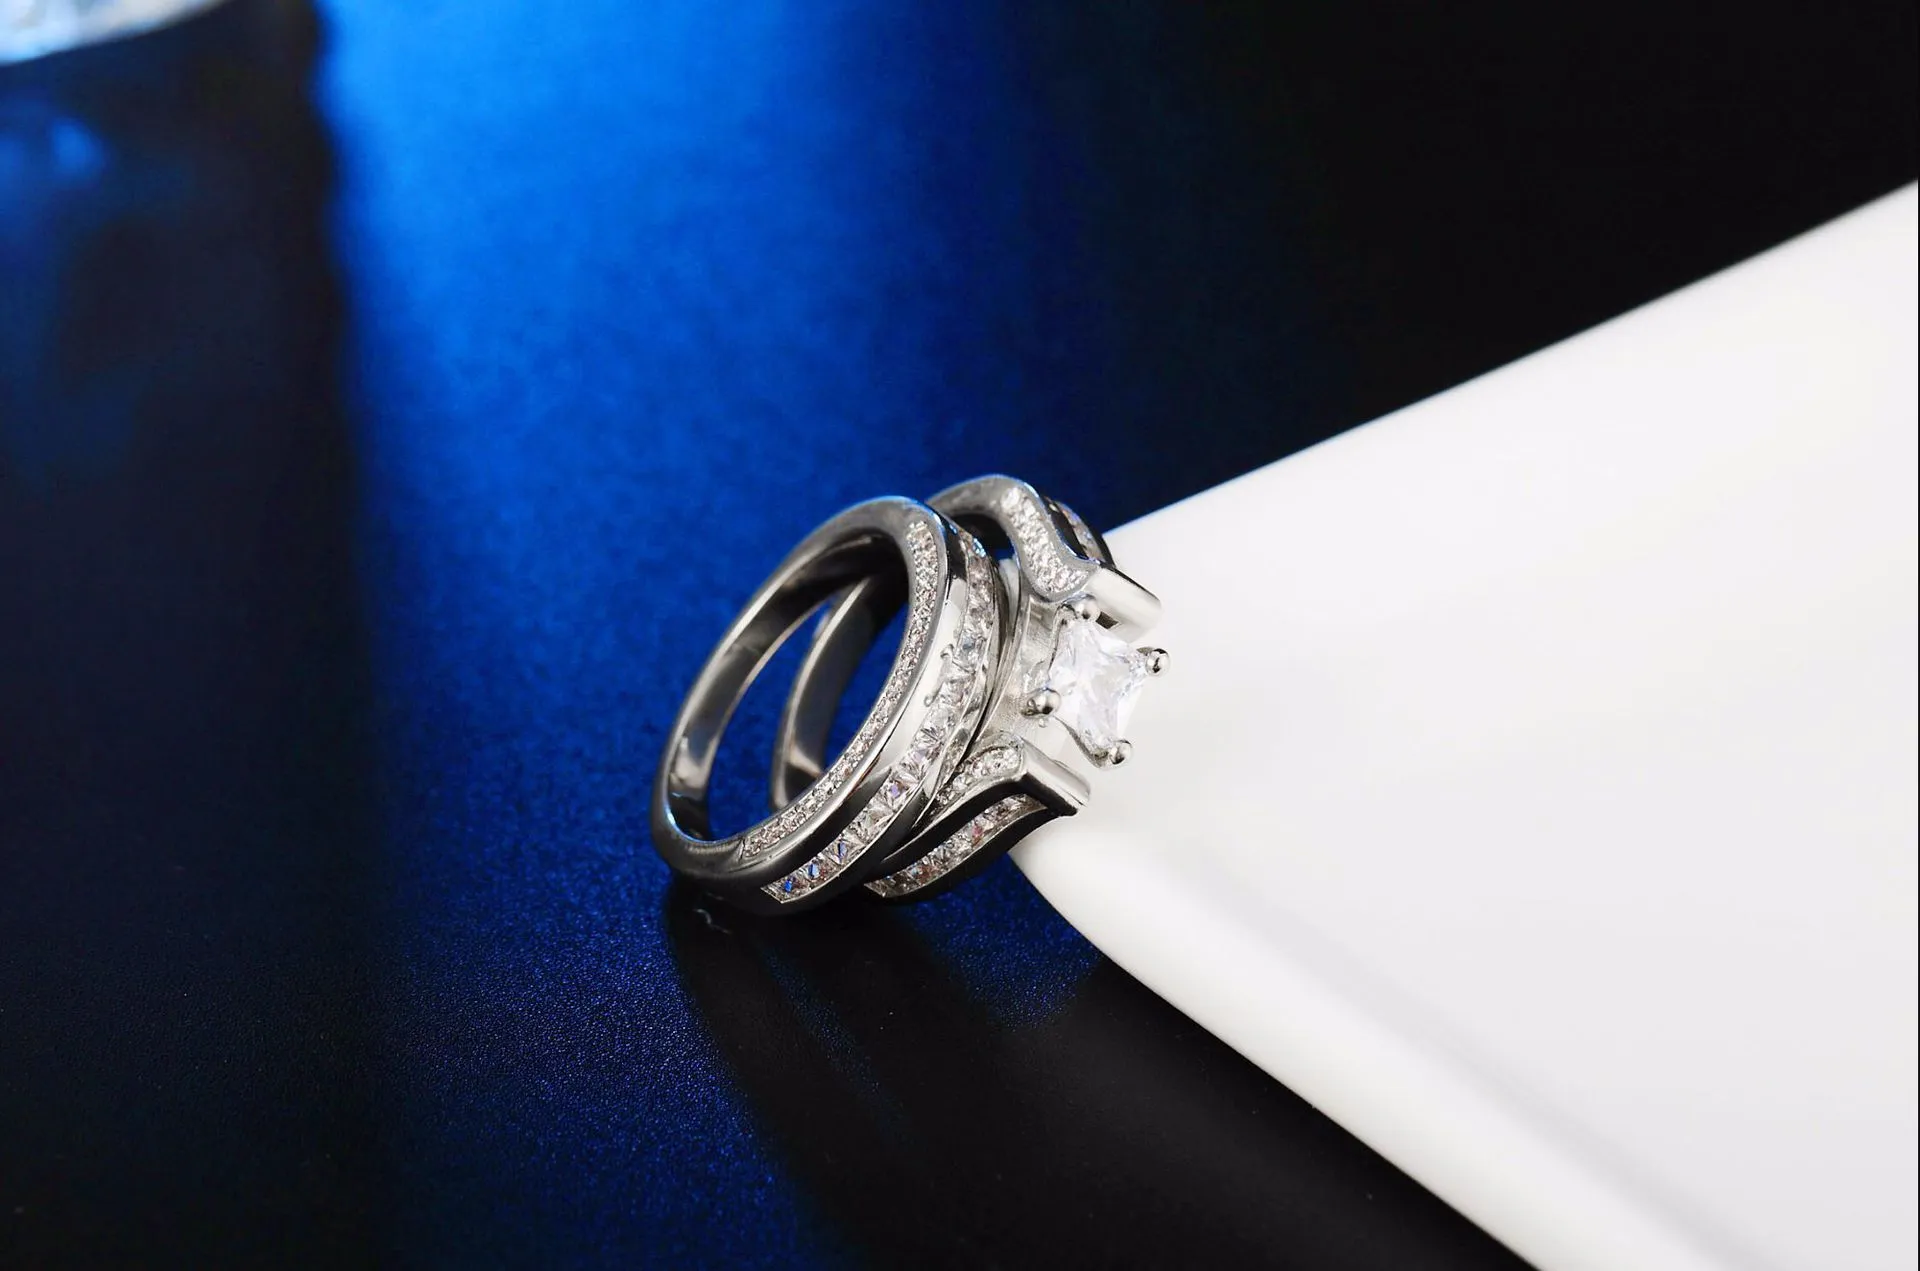 OMHXZJ Индивидуальная мода OL для женщин и девочек, свадебный подарок, роскошный комплект колец из стерлингового серебра 925 пробы с цирконием RN1387579867